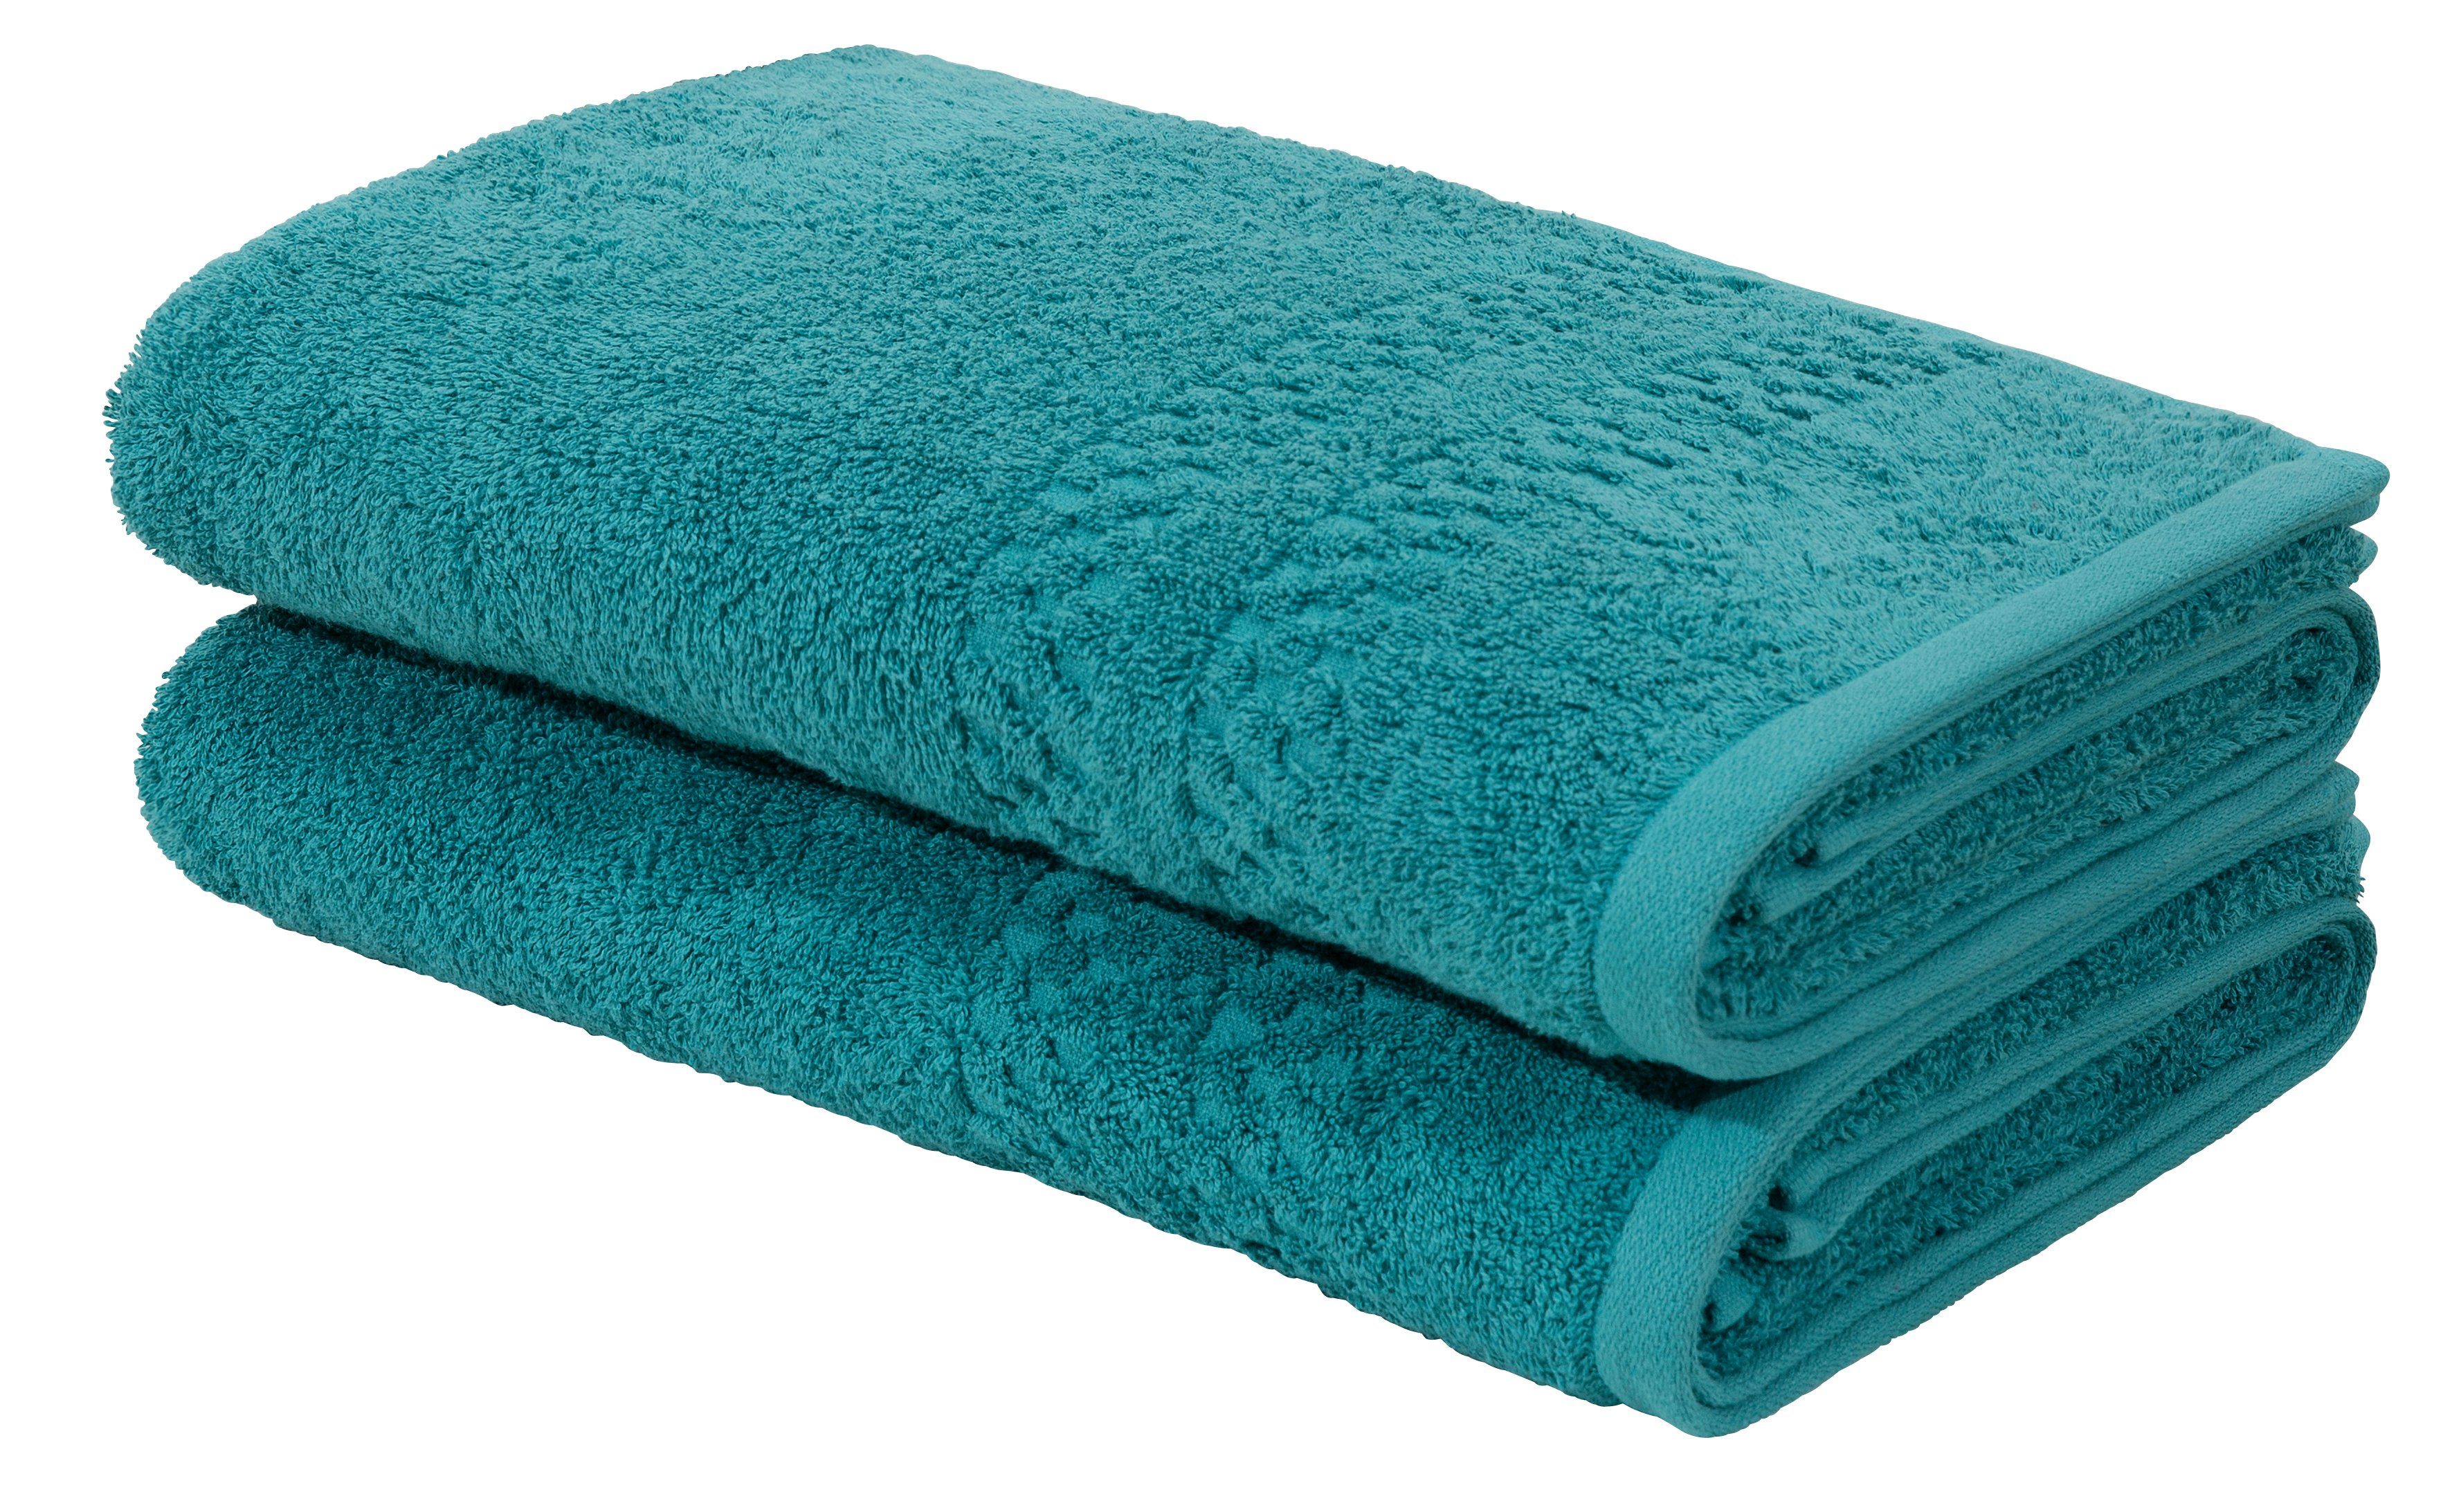 Blaue Handtuch-Sets online kaufen | OTTO